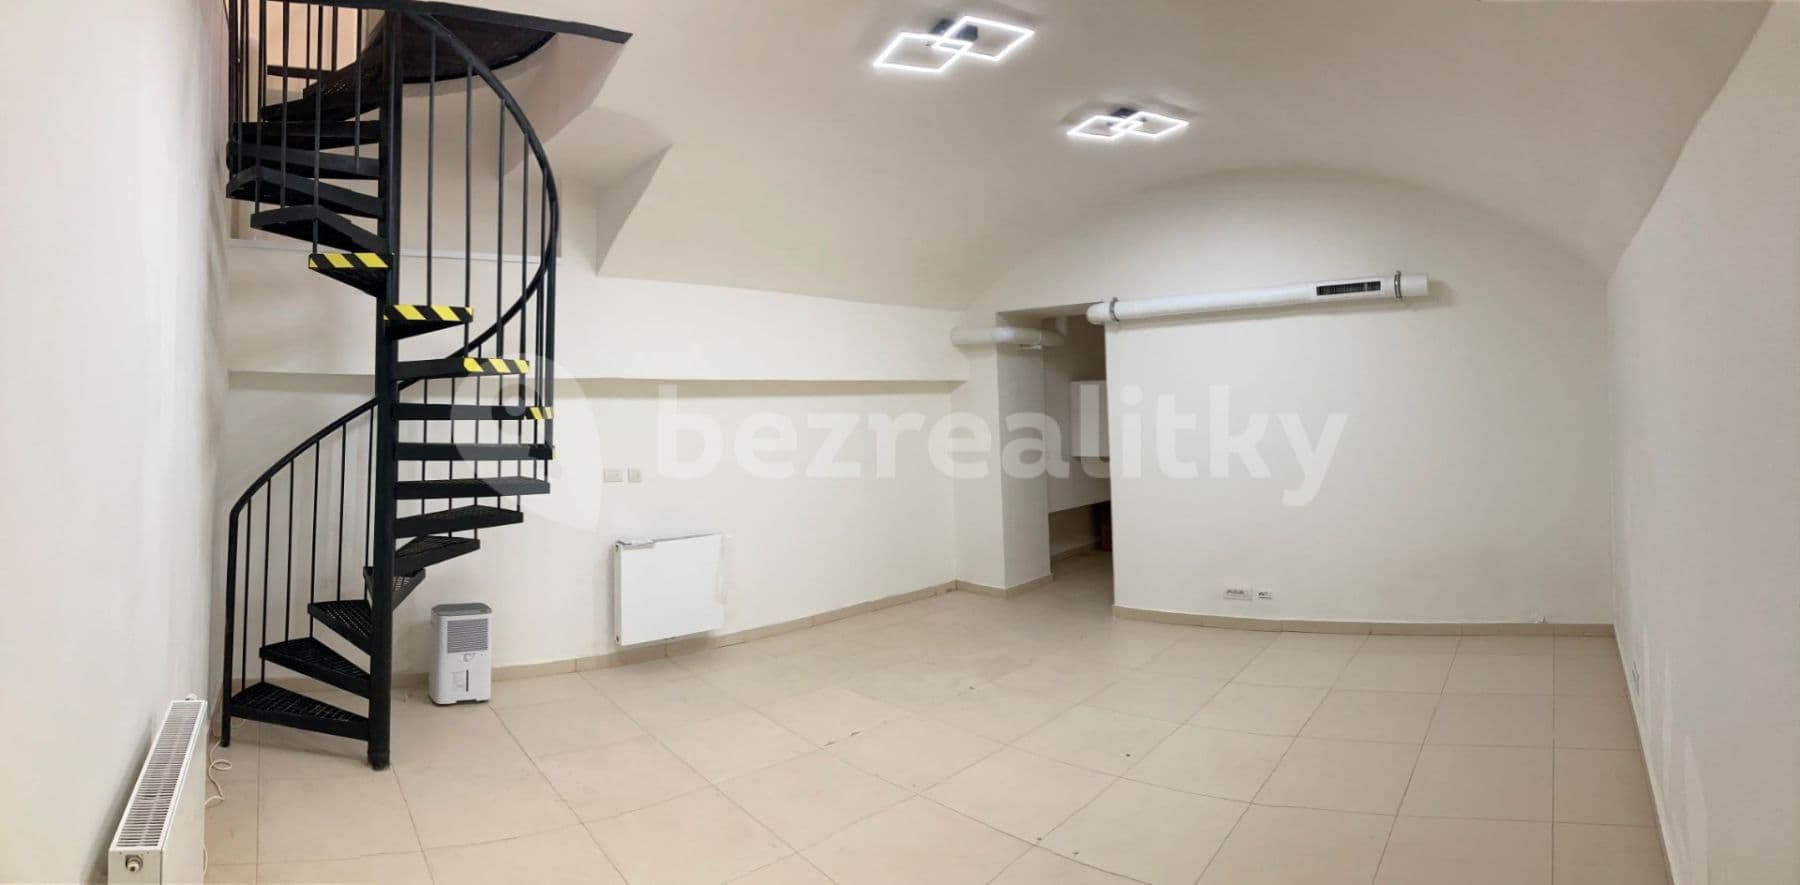 Prodej nebytového prostoru 65 m², Soukenická, Praha, Praha